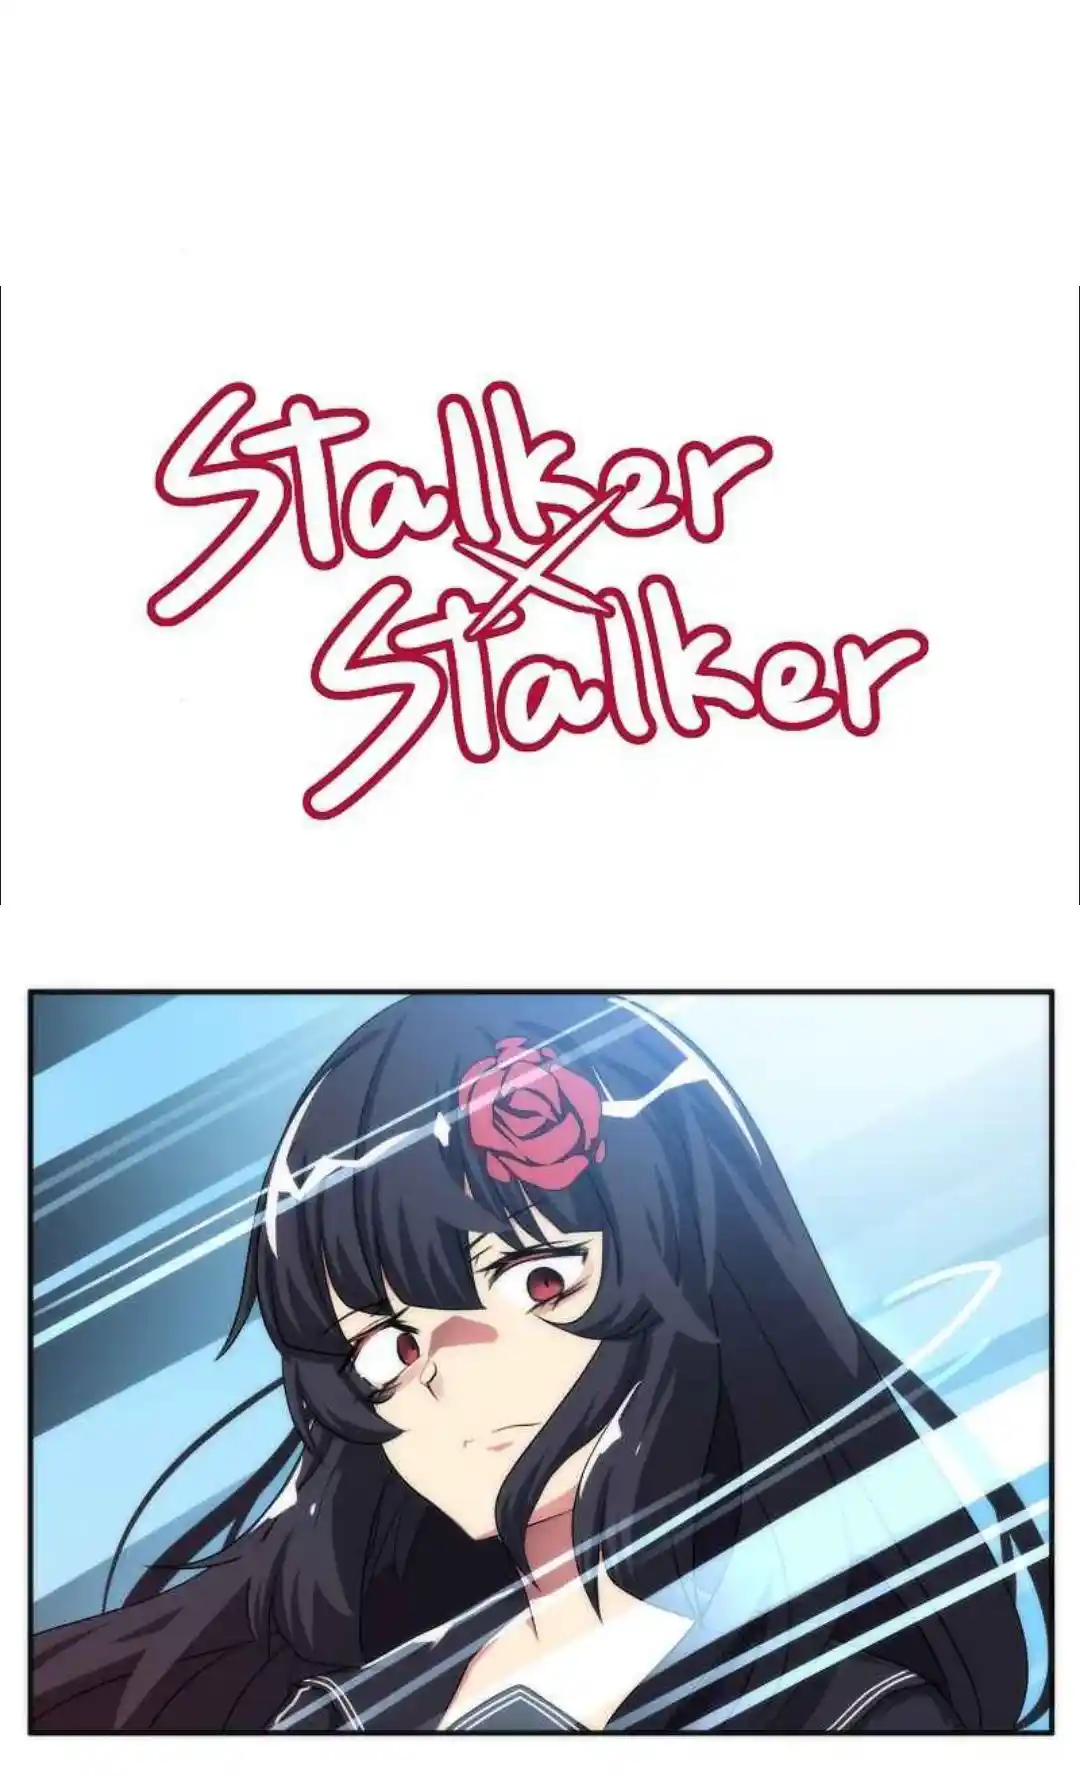 Stalker X Stalker: Chapter 84 - Page 1